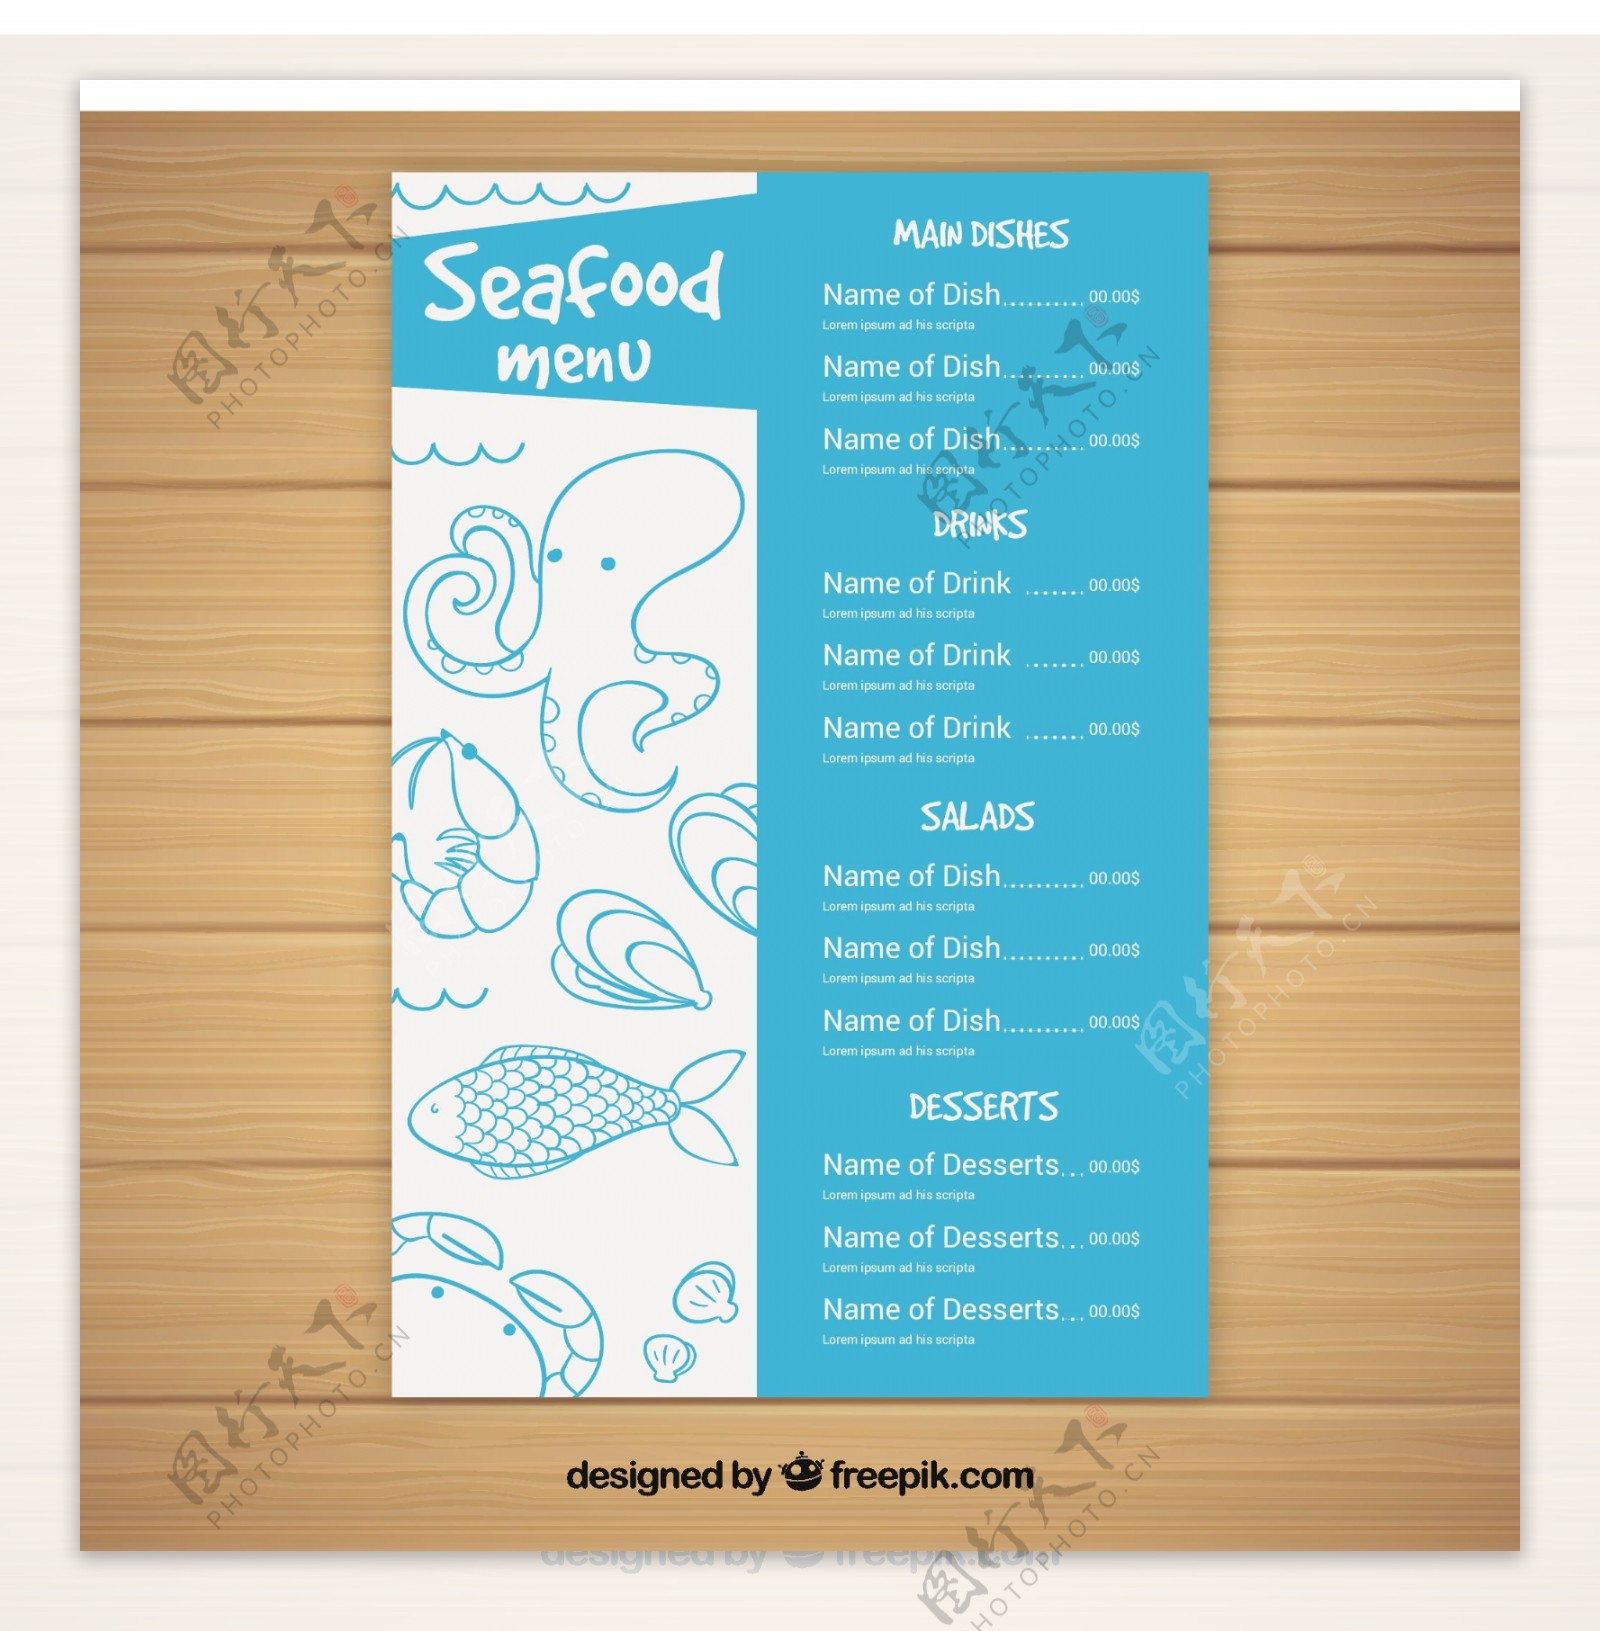 海鲜菜单模板与草图